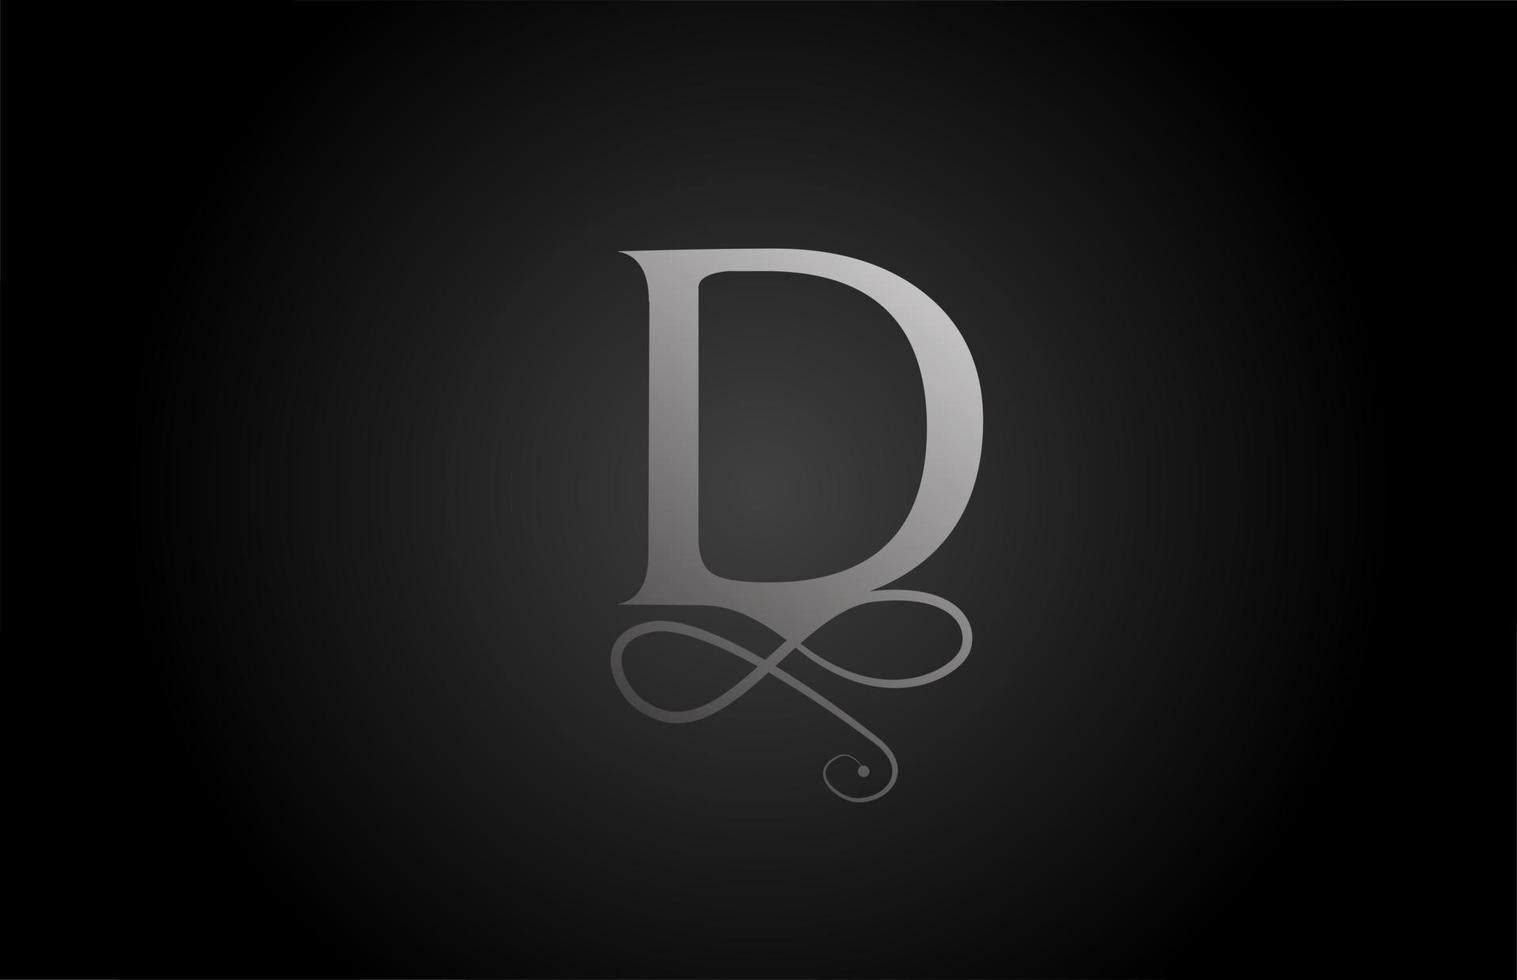 D blanco y negro elegante monograma ornamento alfabeto letra logo icono de lujo. Diseño de marca empresarial y corporativa para productos empresariales. vector